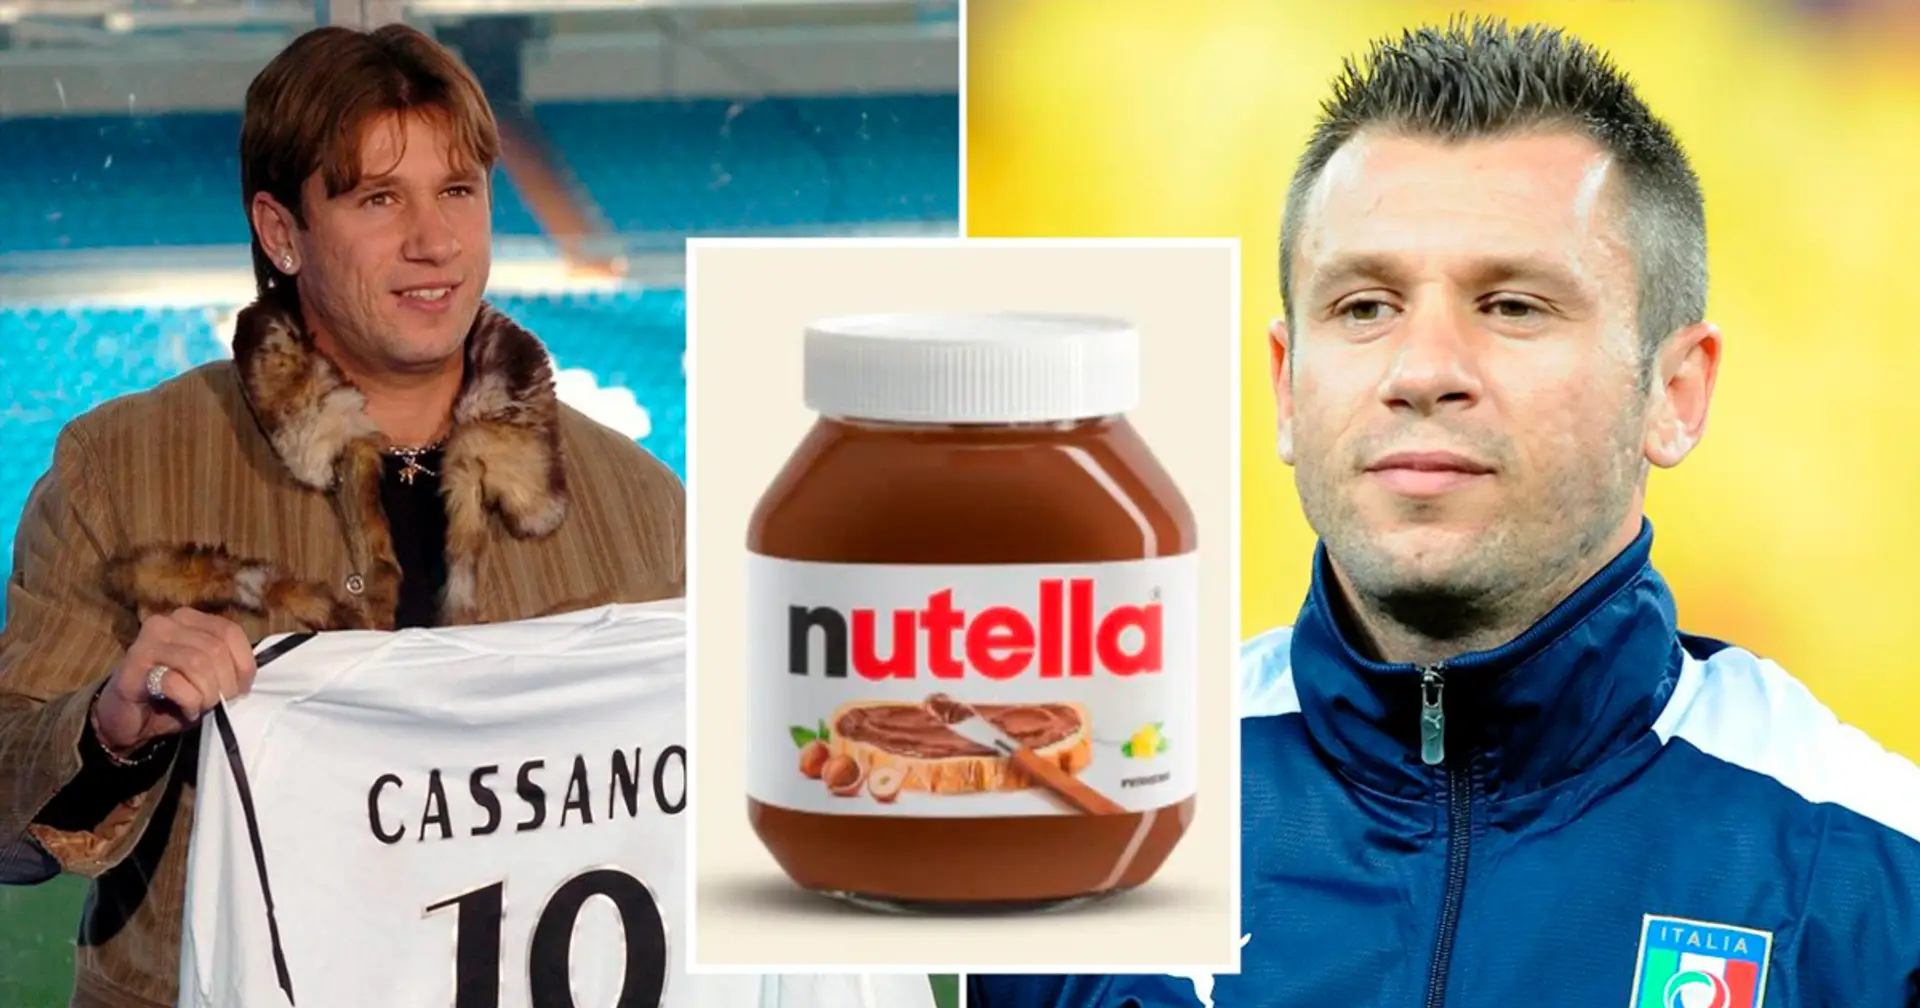 Antonio Cassano verrät, er habe Nutella direkt aus dem Glas gegessen und in sieben Monaten bei Real Madrid 14 Kilo zugenommen 